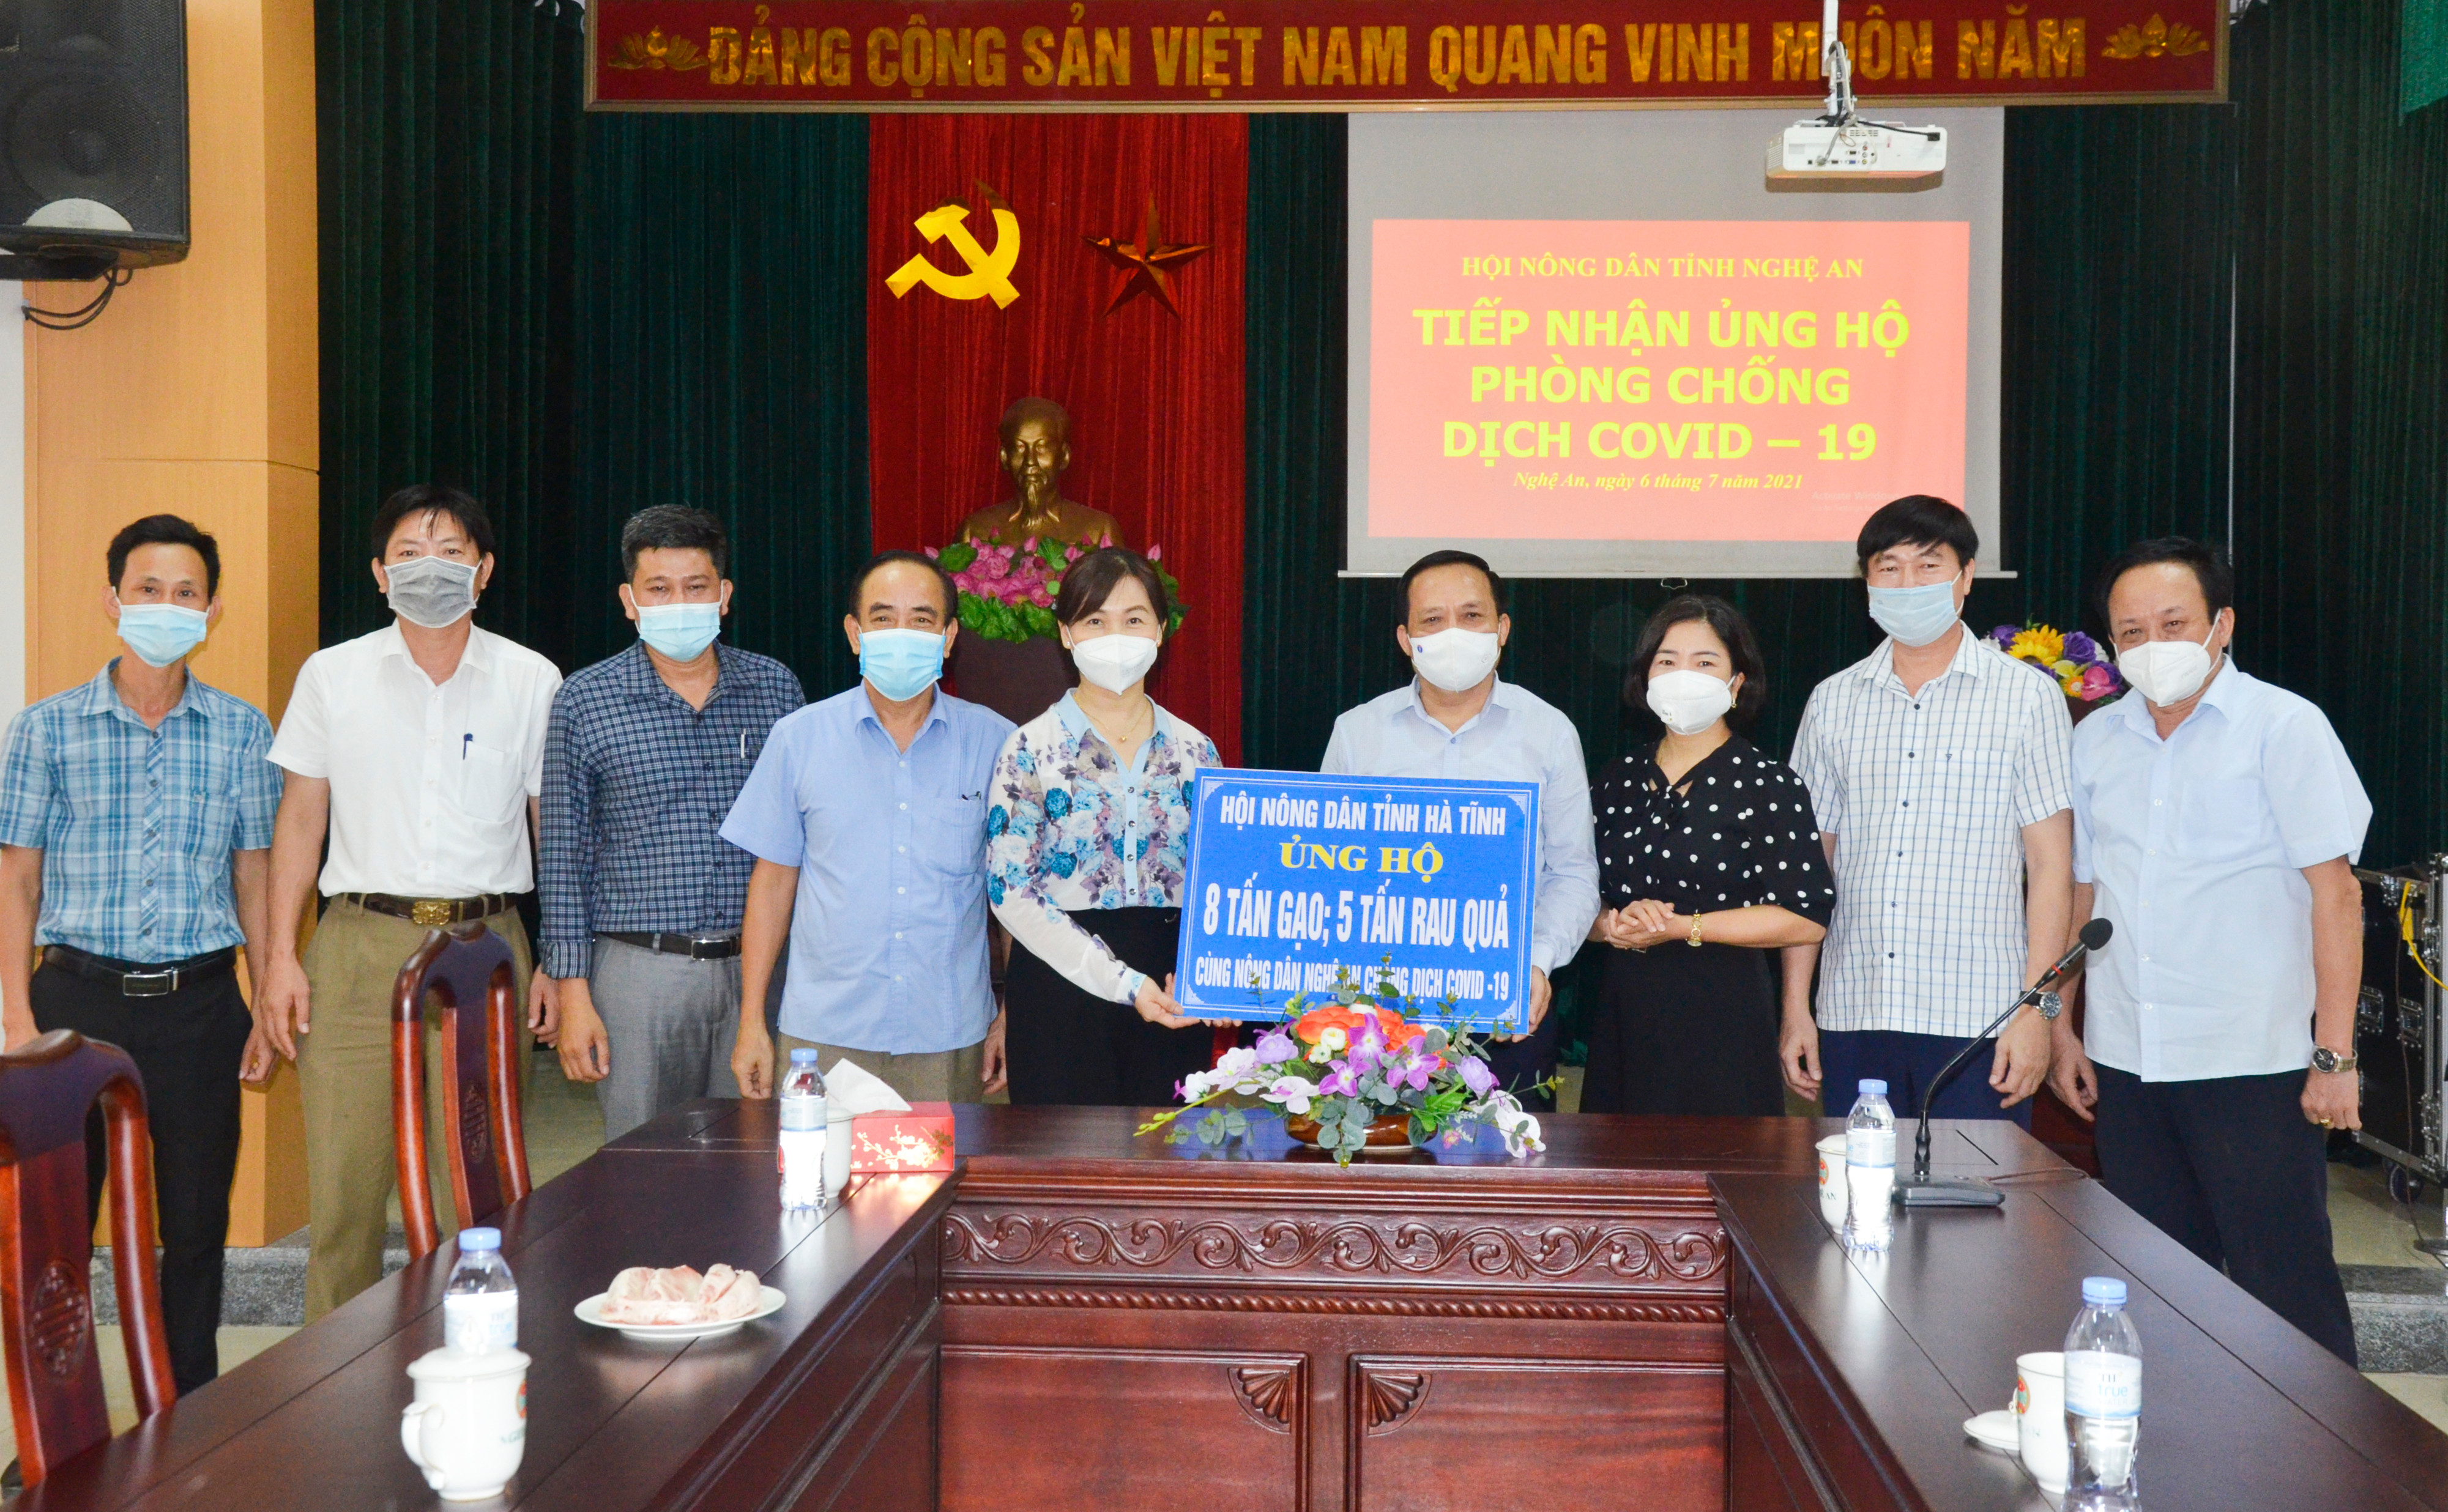 Hội Nông dân tỉnh Hà Tĩnh trao hỗ trợ cho Hội Nông dân tỉnh Nghệ An. Ảnh: Thanh Lê